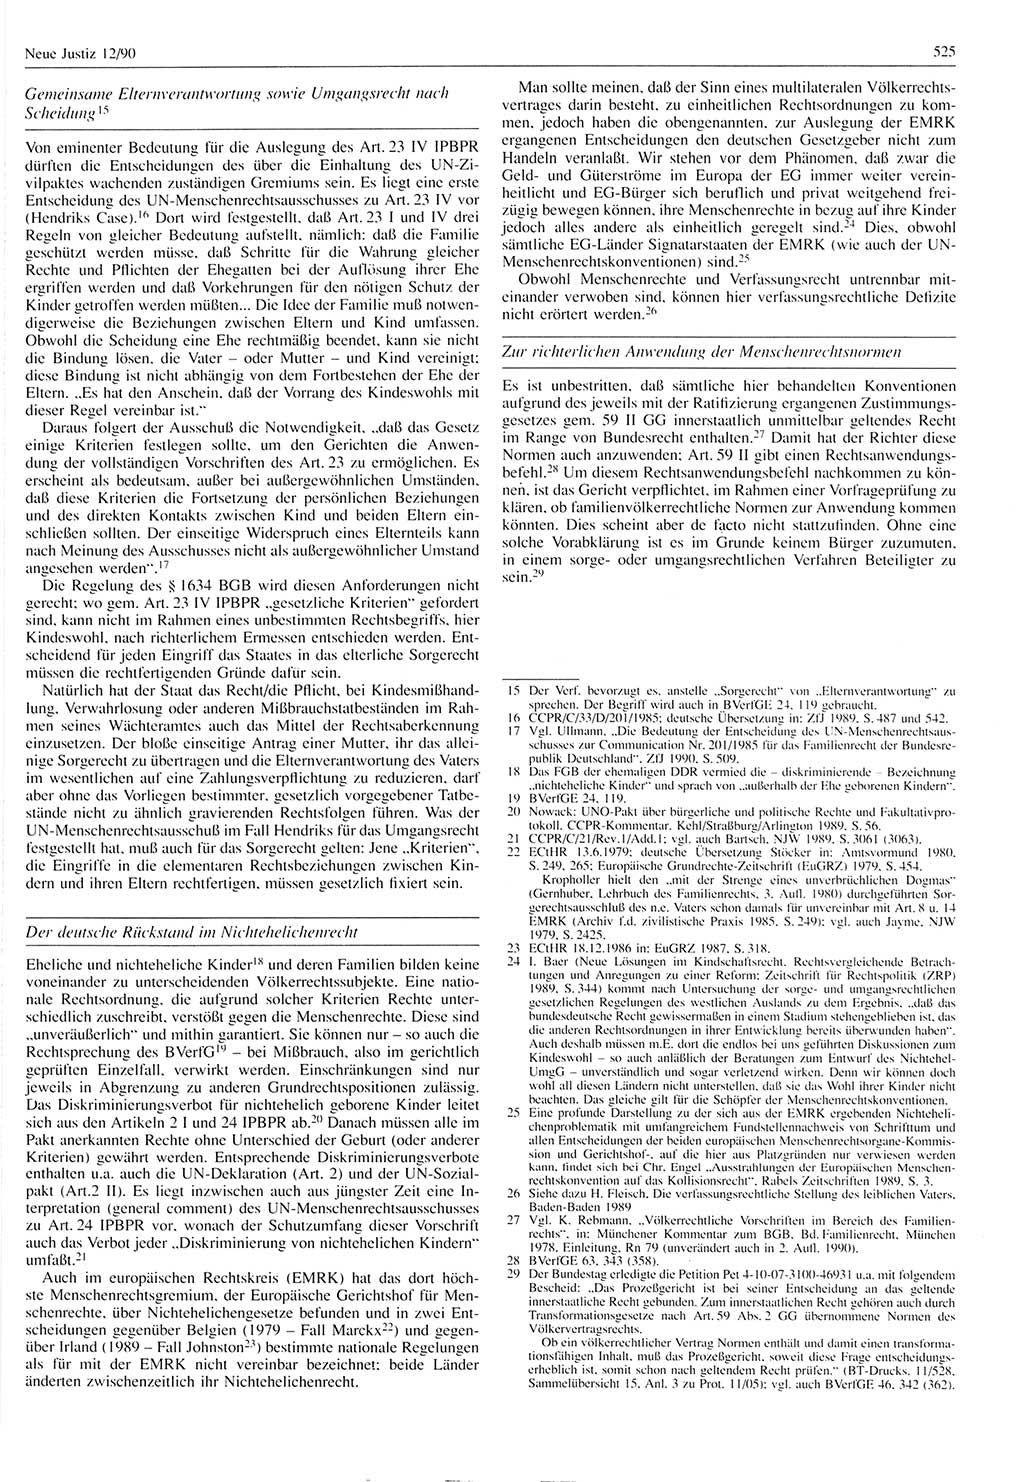 Neue Justiz (NJ), Zeitschrift für Rechtsetzung und Rechtsanwendung [Deutsche Demokratische Republik (DDR)], 44. Jahrgang 1990, Seite 525 (NJ DDR 1990, S. 525)